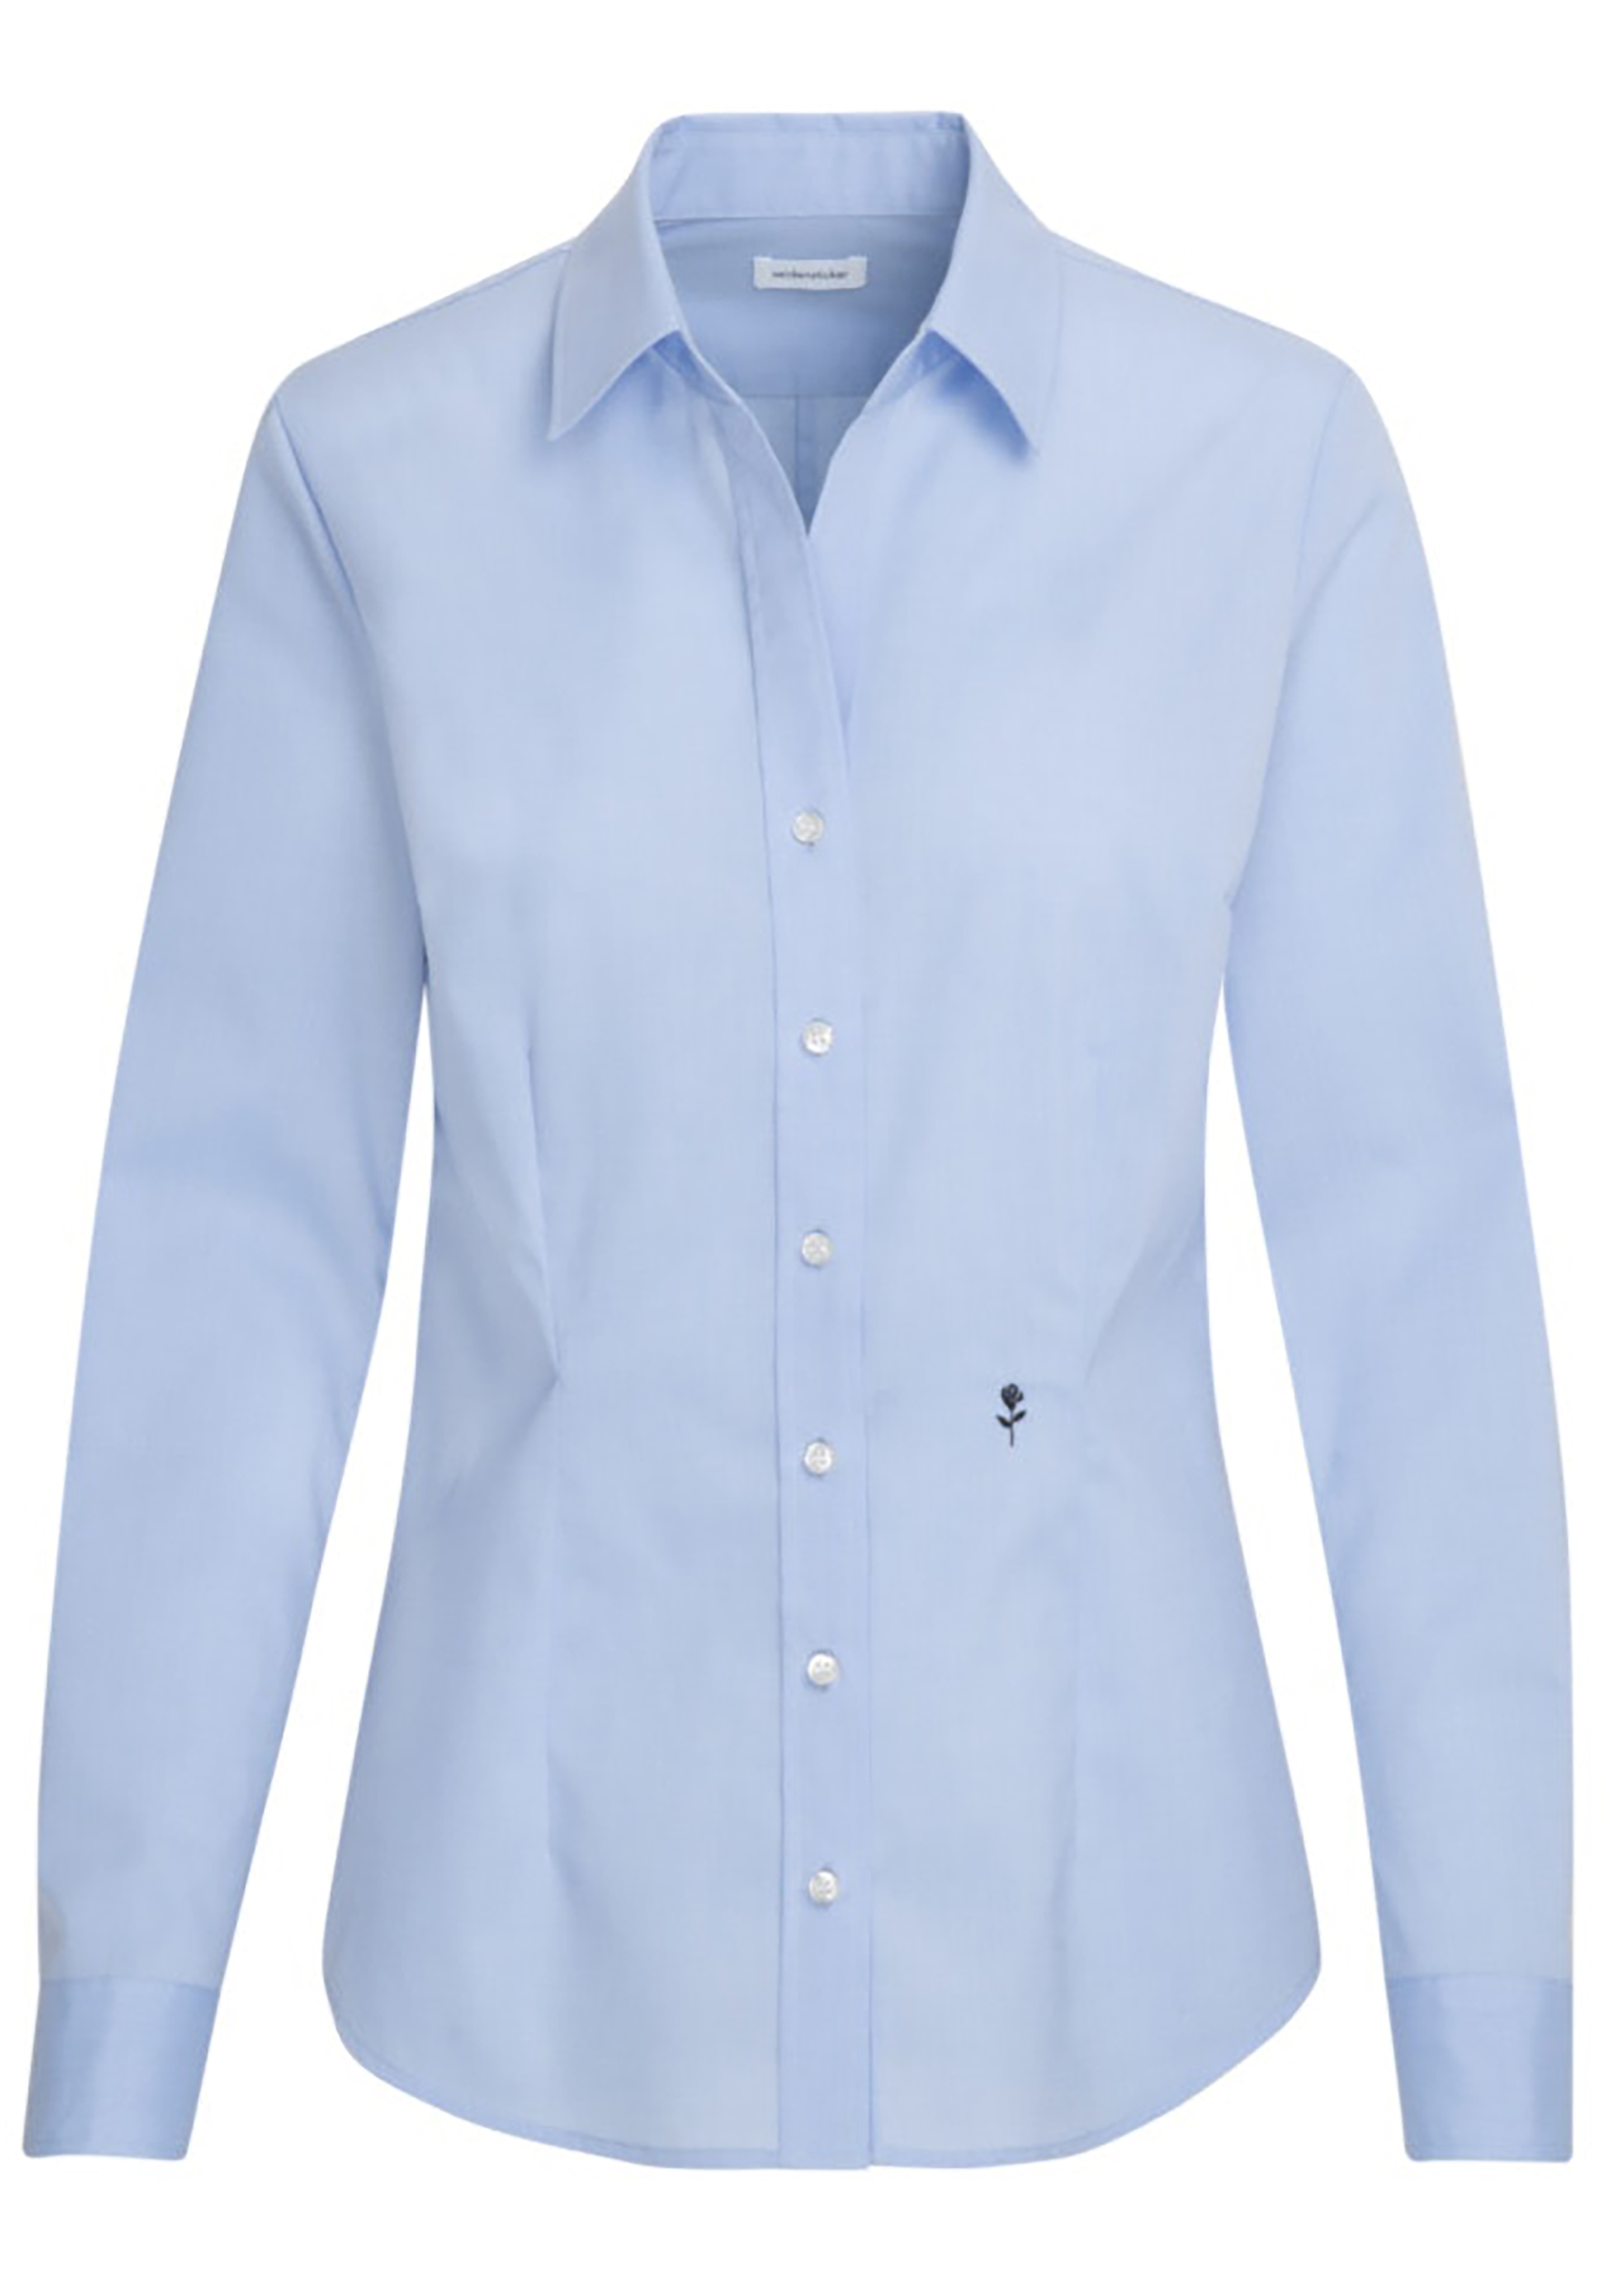 markt Uithoudingsvermogen Oppositie Seidensticker dames blouse slim fit, lichtblauw - Shop de nieuwste  voorjaarsmode